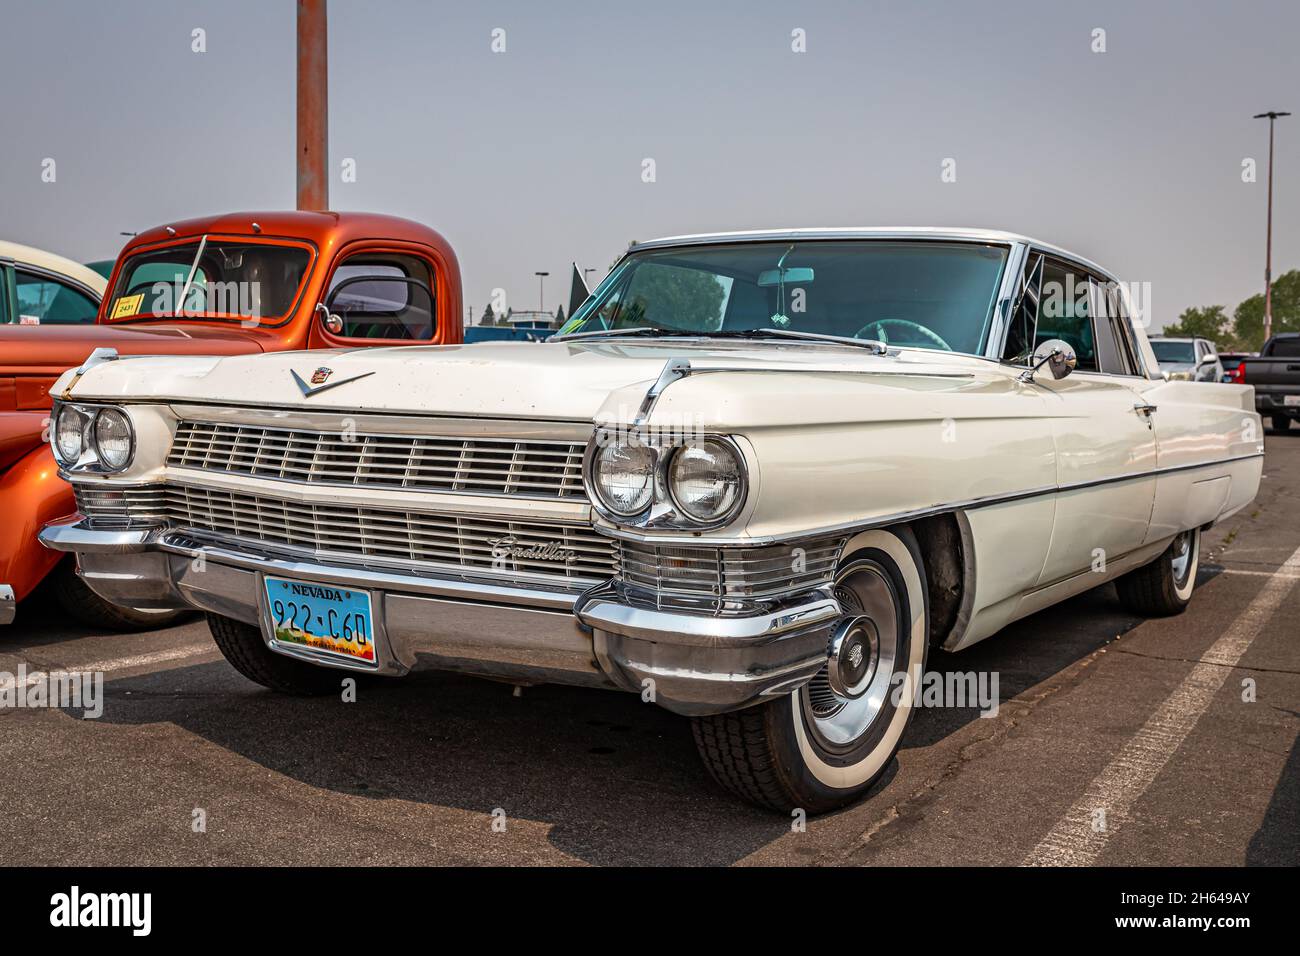 Reno, NV - August 6, 2021: 1964 Cadillac Coupe de Ville hardtop at a local car show. Stock Photo